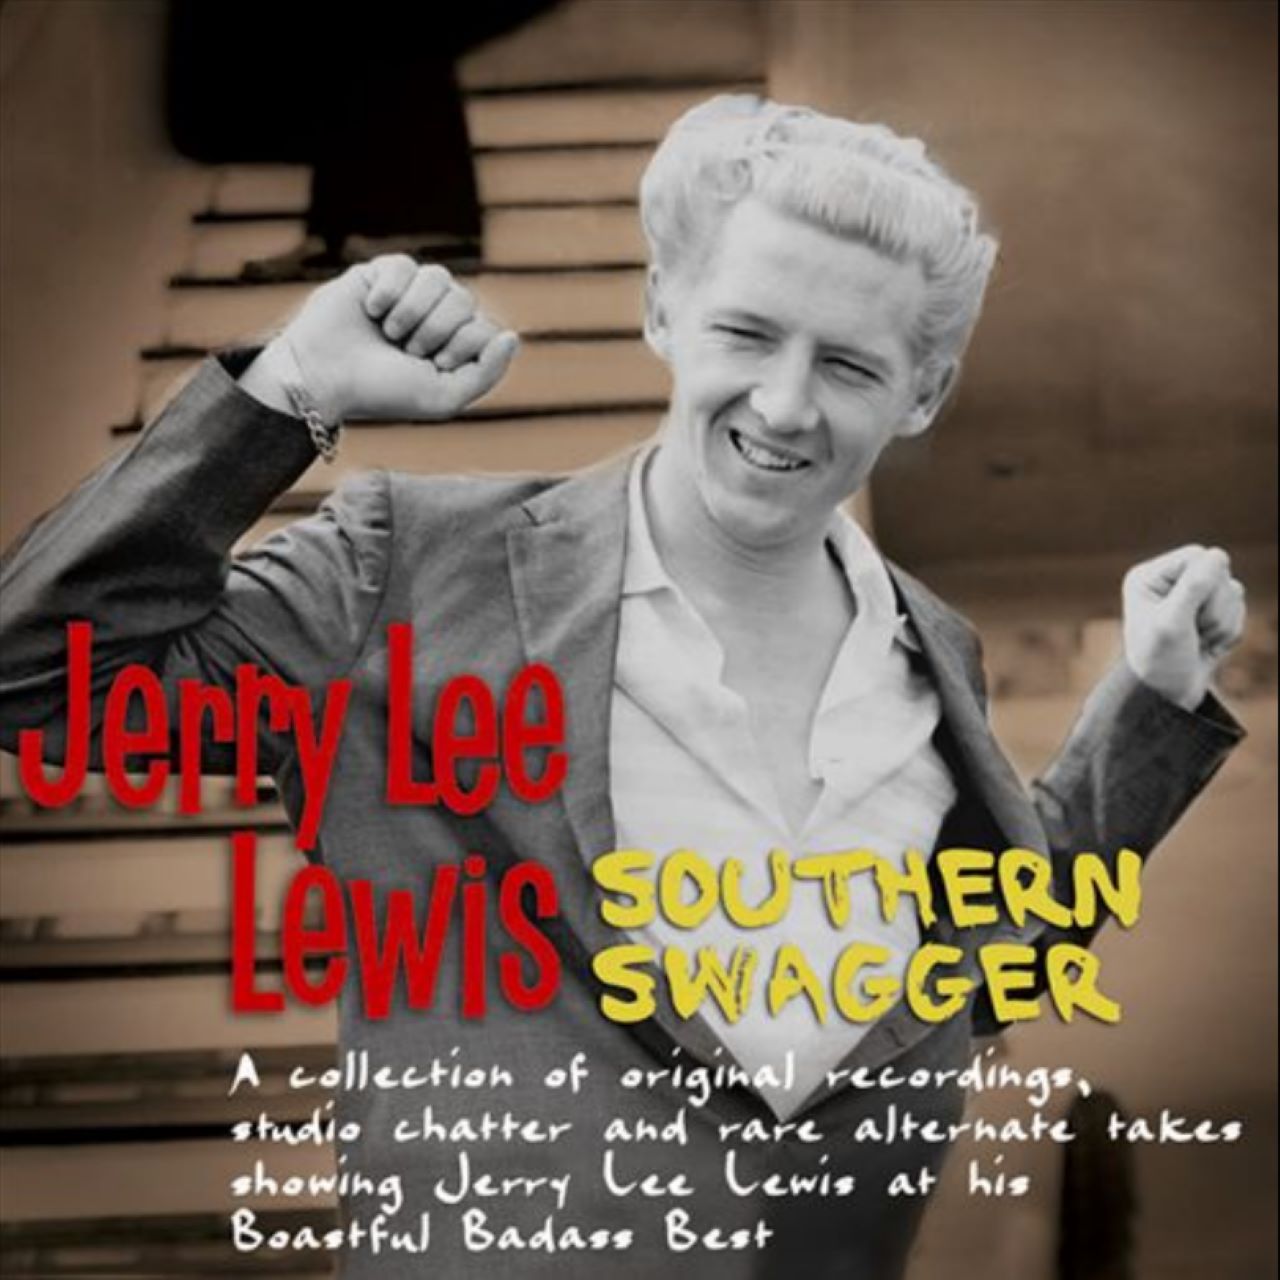 Recensione album di Jerry Lee Lewis – “Southern Swagger” di Roberto Arioli per la rivista Jamboree n. 58, 2007